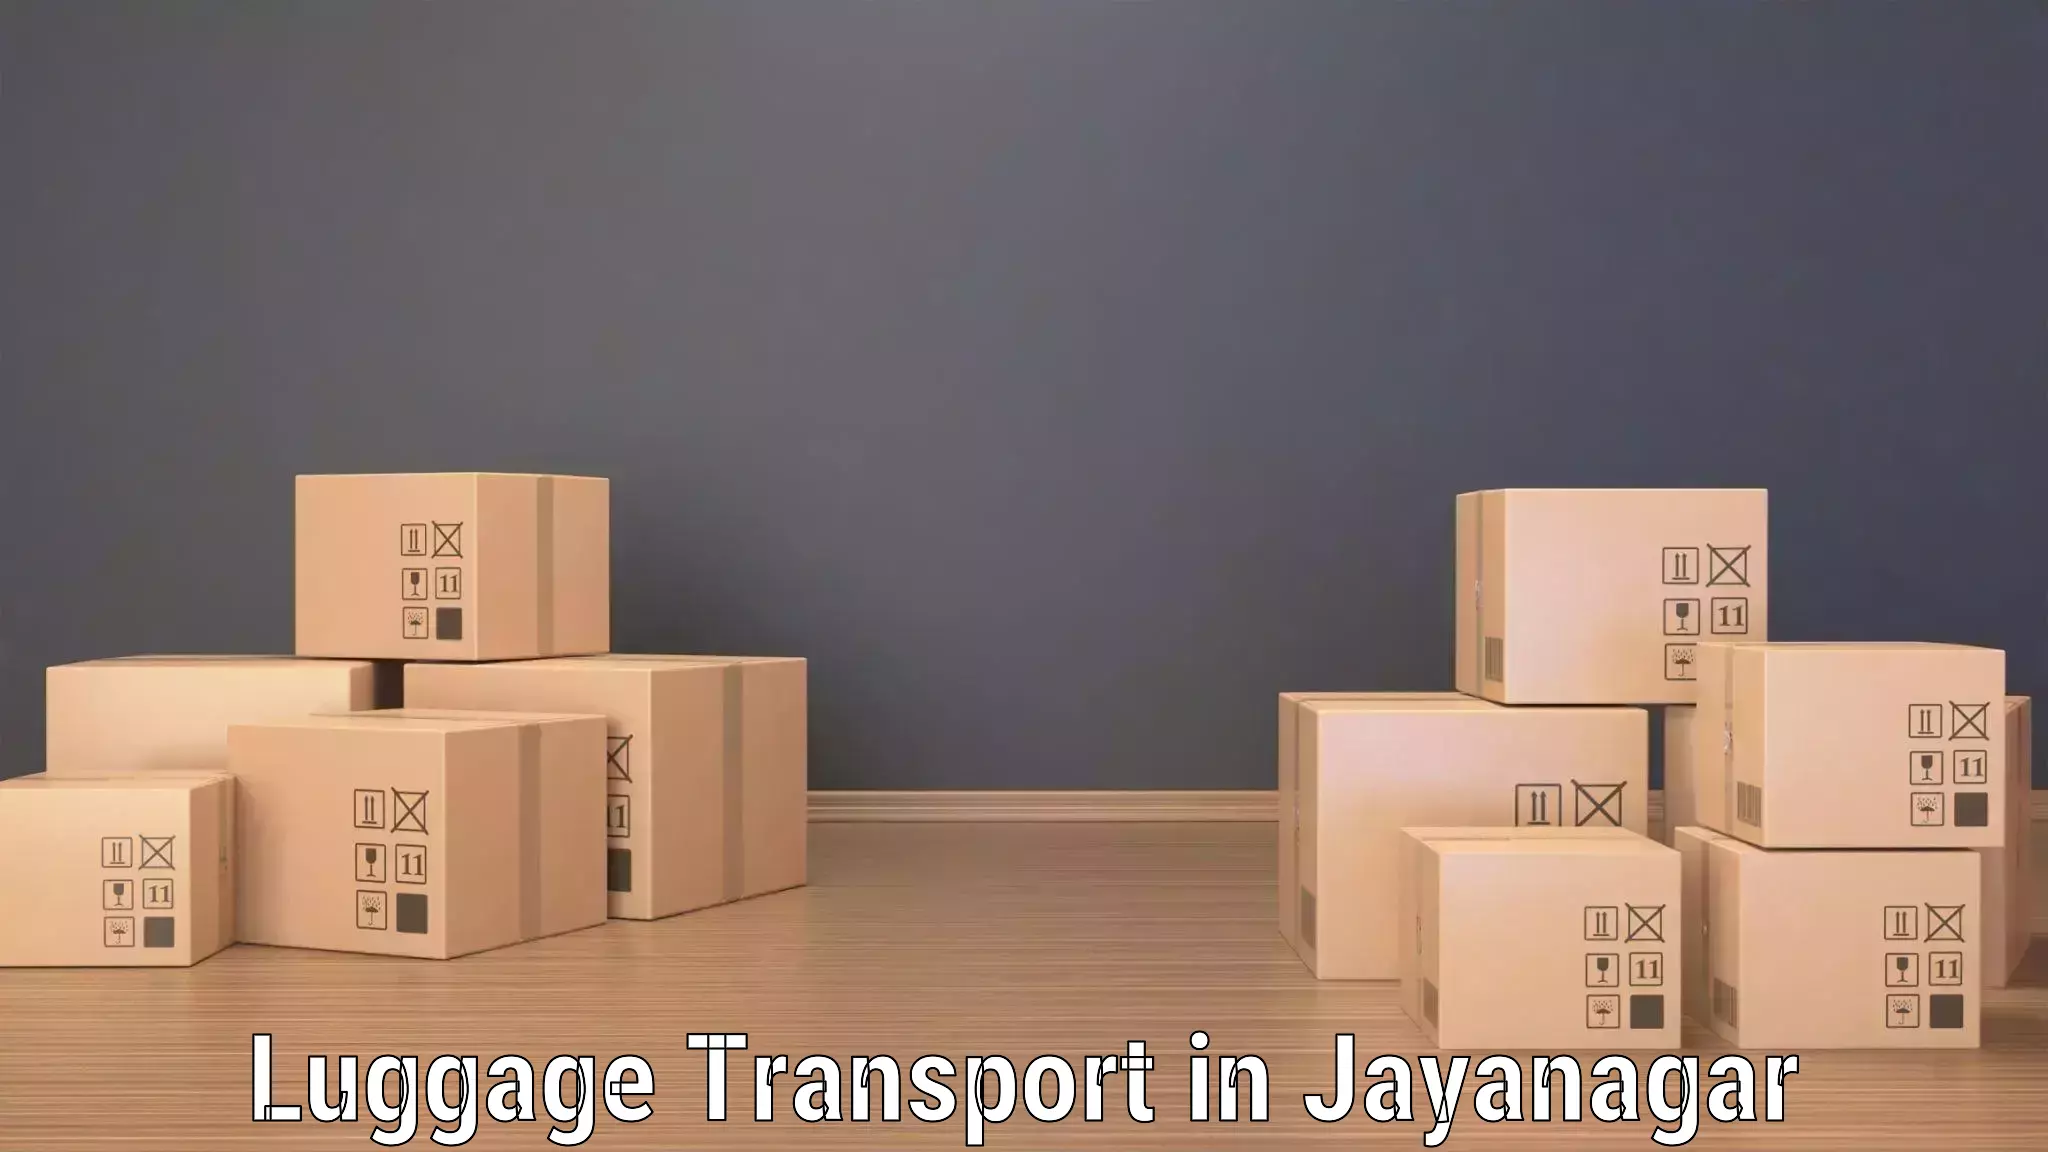 Baggage transport scheduler in Jayanagar